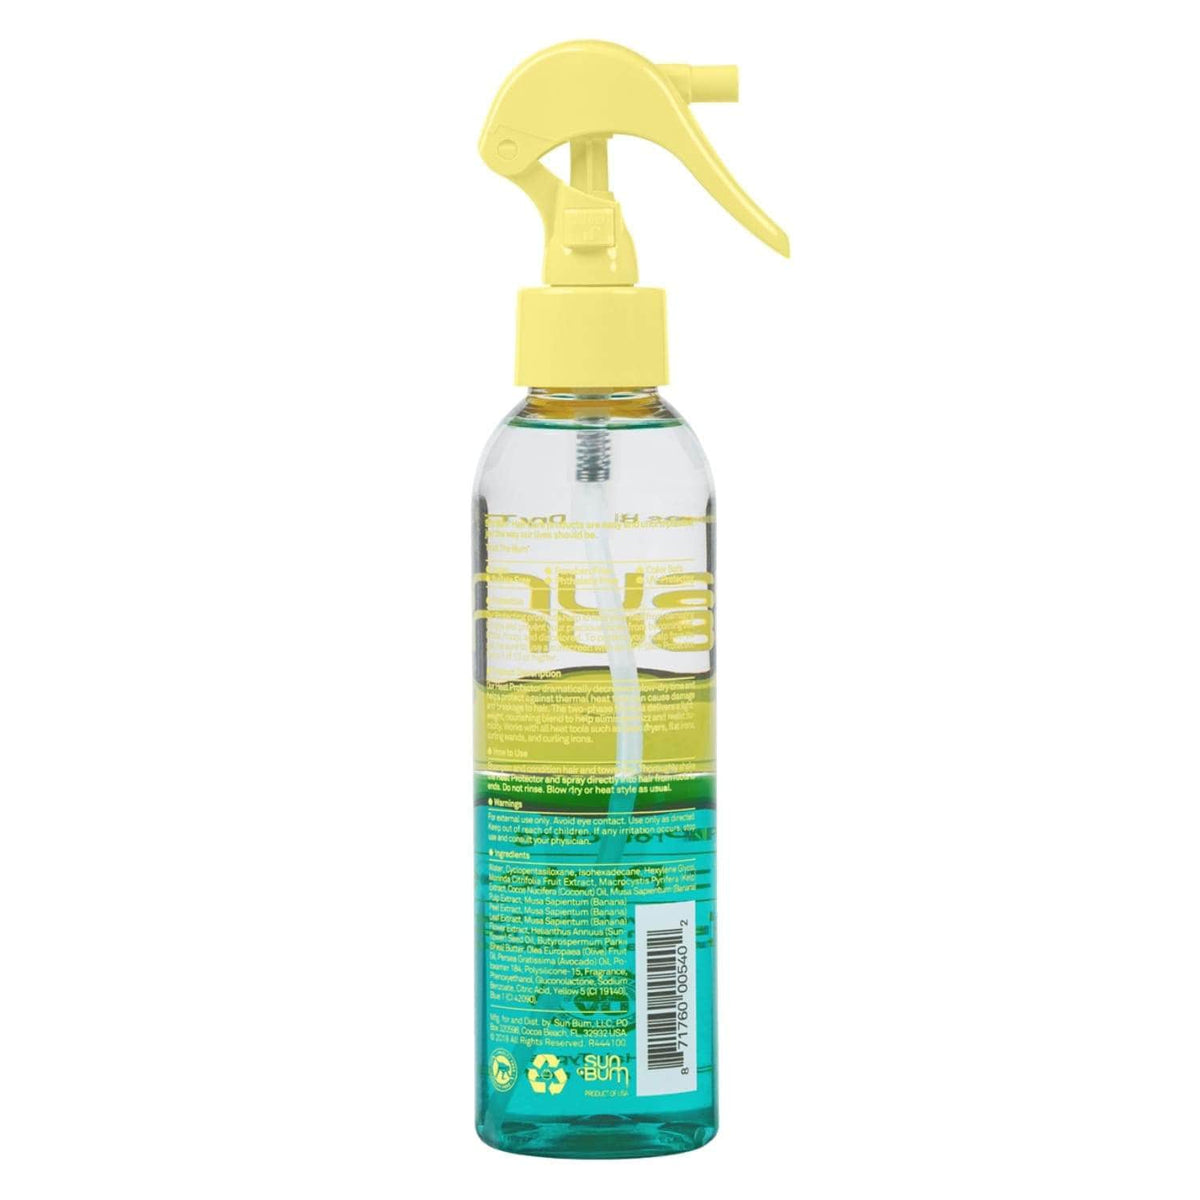 Sun Bum Protecting Heat Protector Spray 177ml - Hair Treatment by Sun Bum 177ml